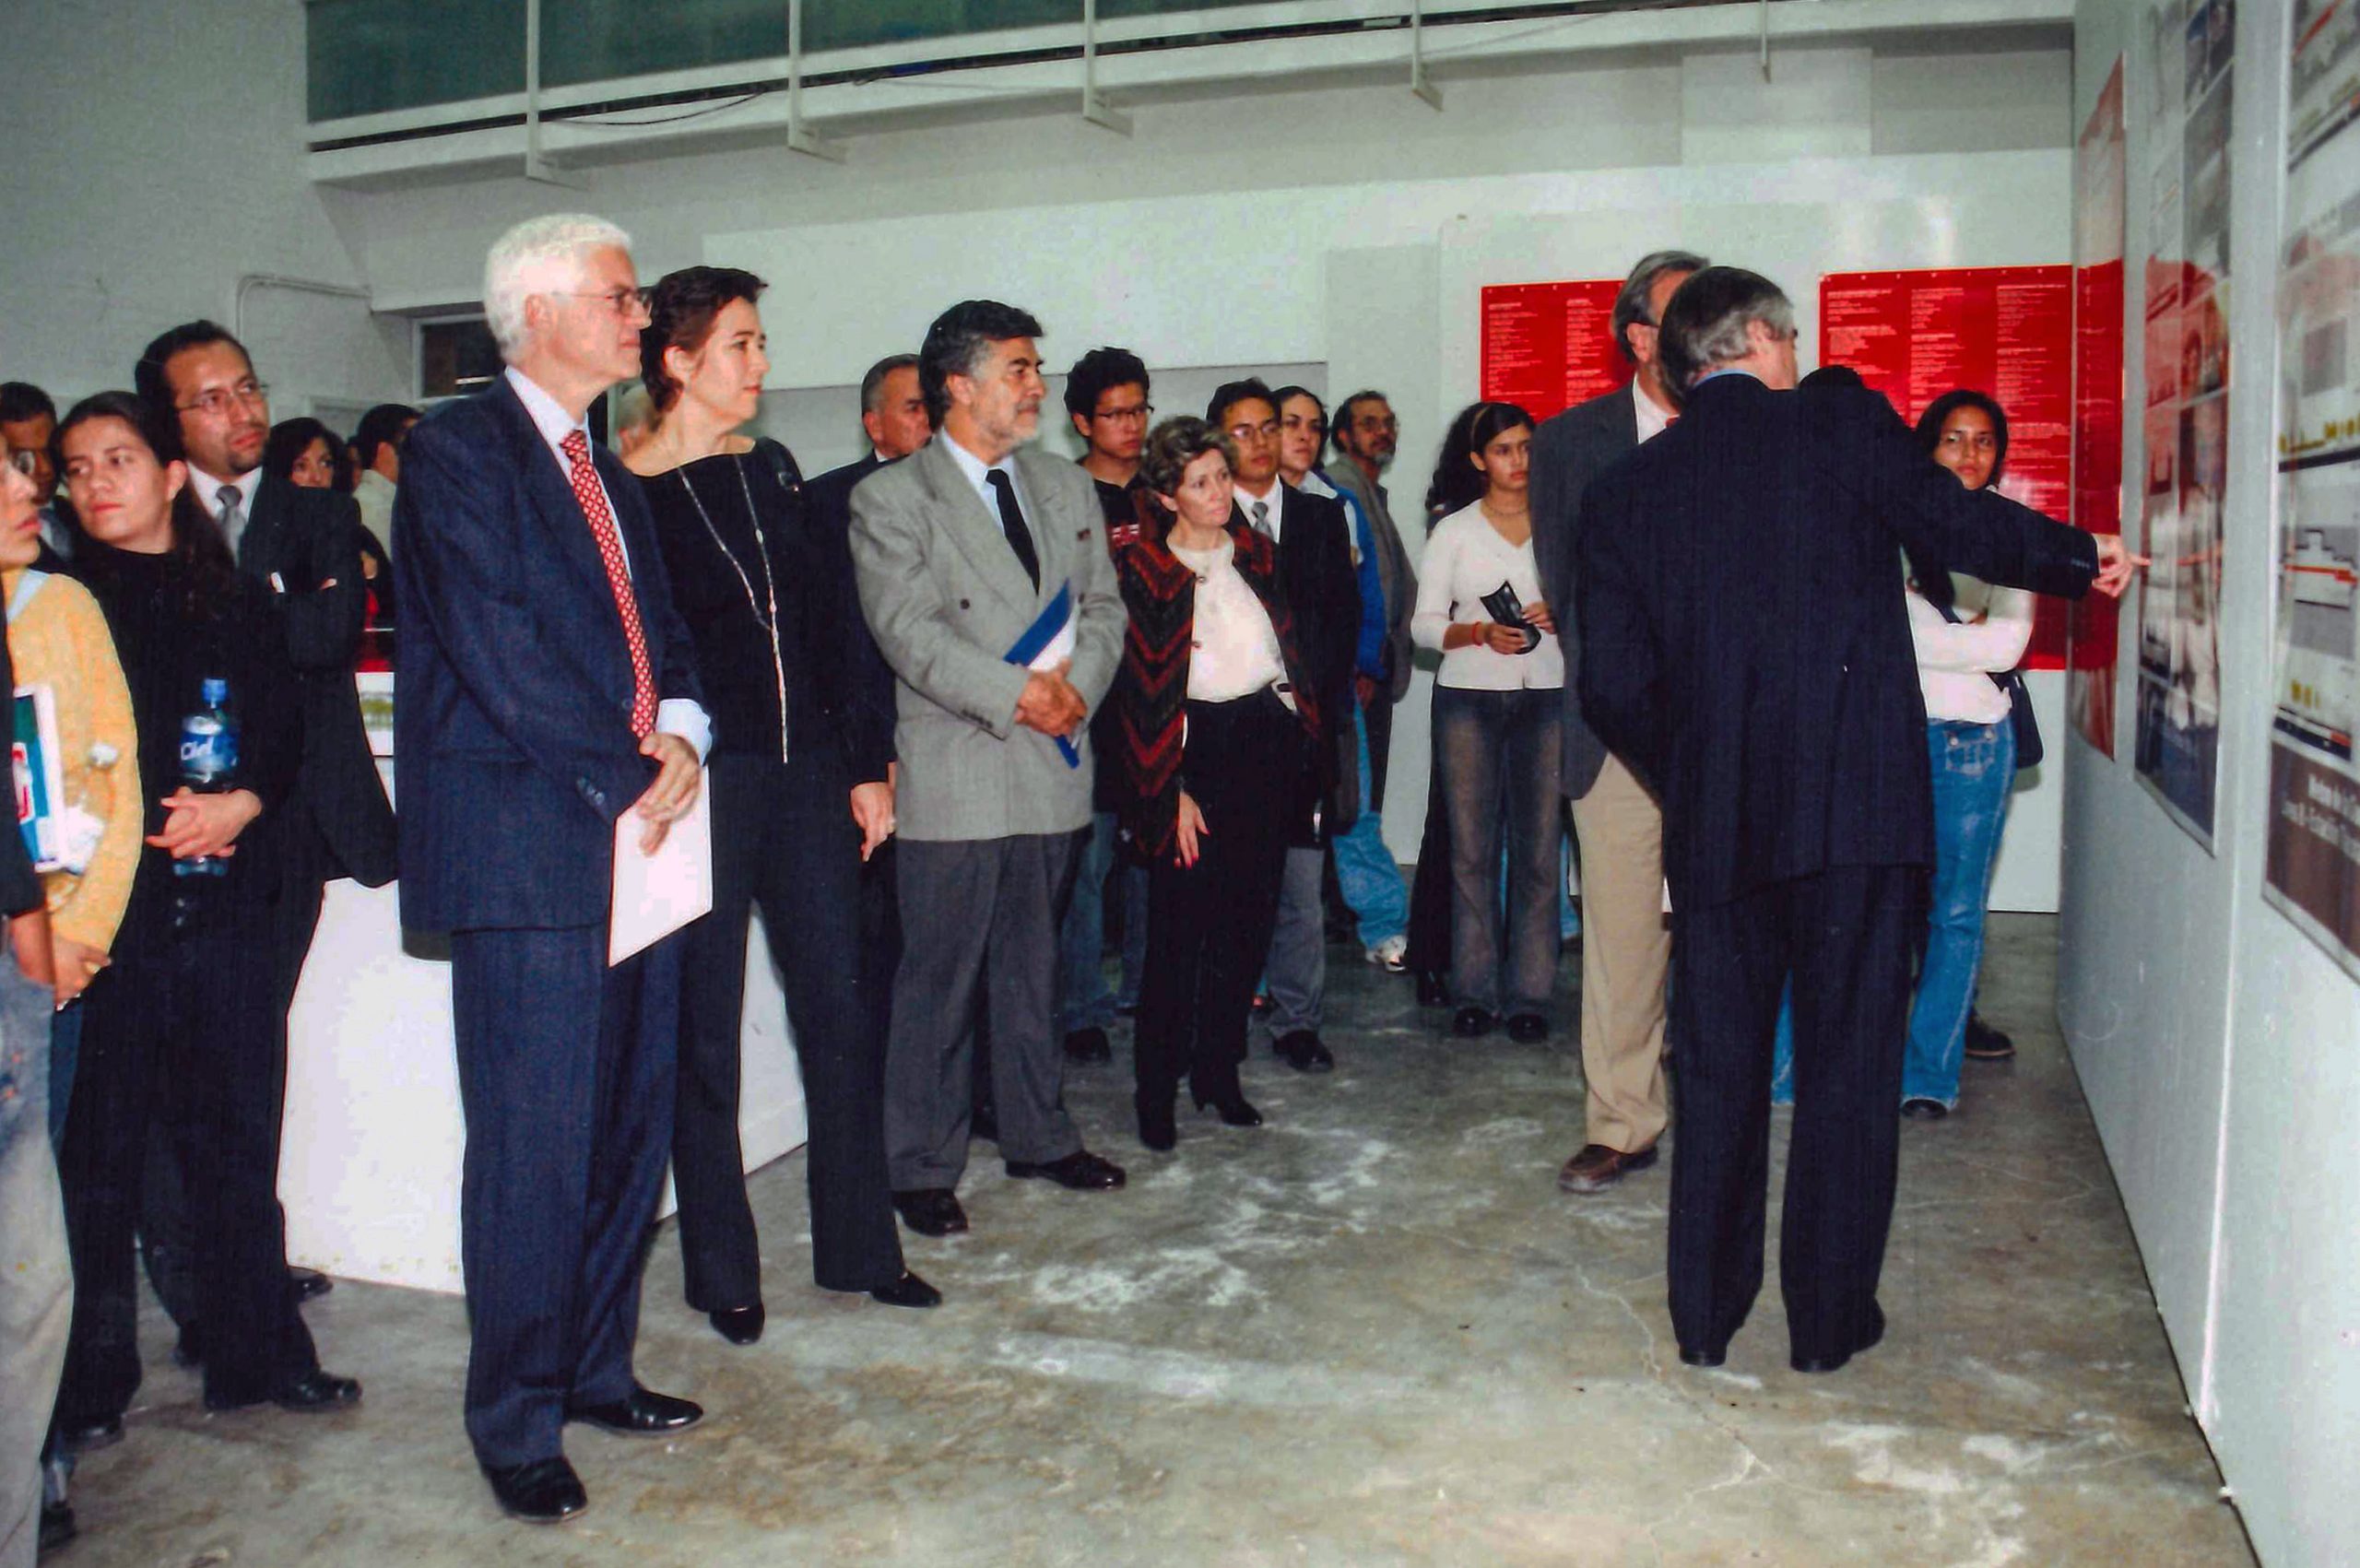 Arq. Aurelio Nuño, Arq. Carlos Mac Gregor, Arq. Clara de Buen. Fotografía: Archivo de la Coordinación de Producción Audiovisual FA 